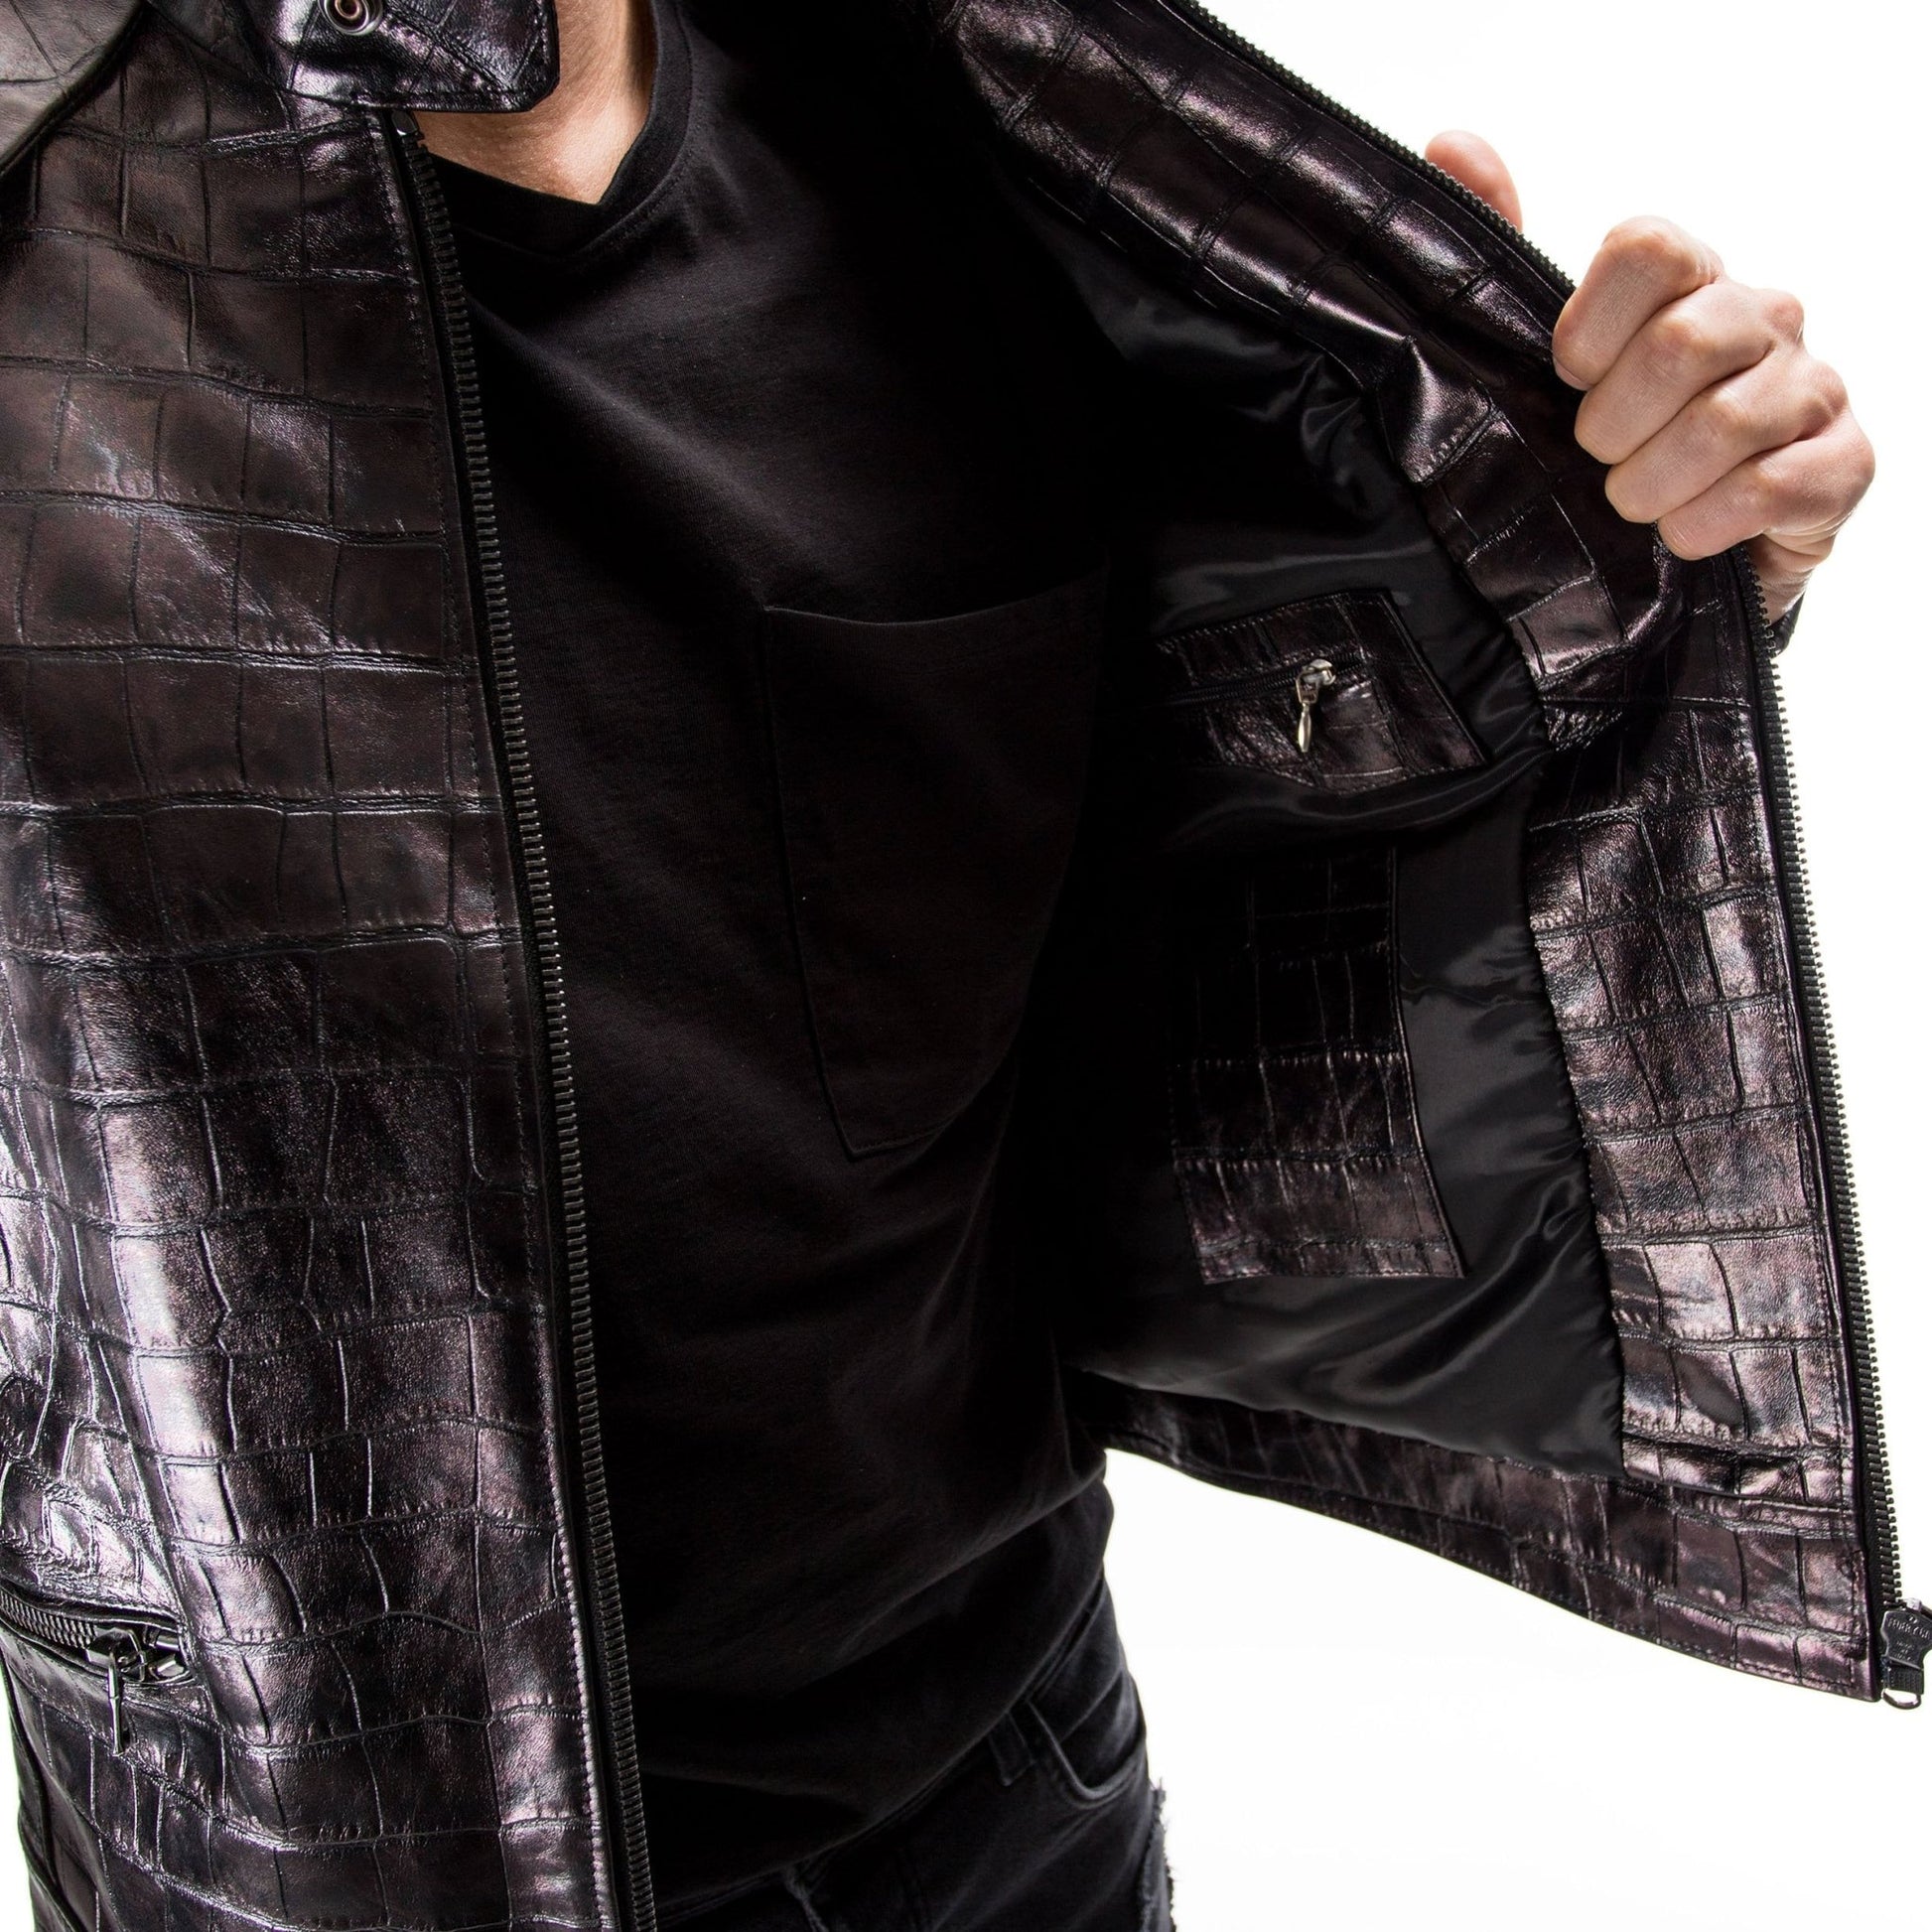 Black Crocodile leather biker jacket - Maker of Jacket